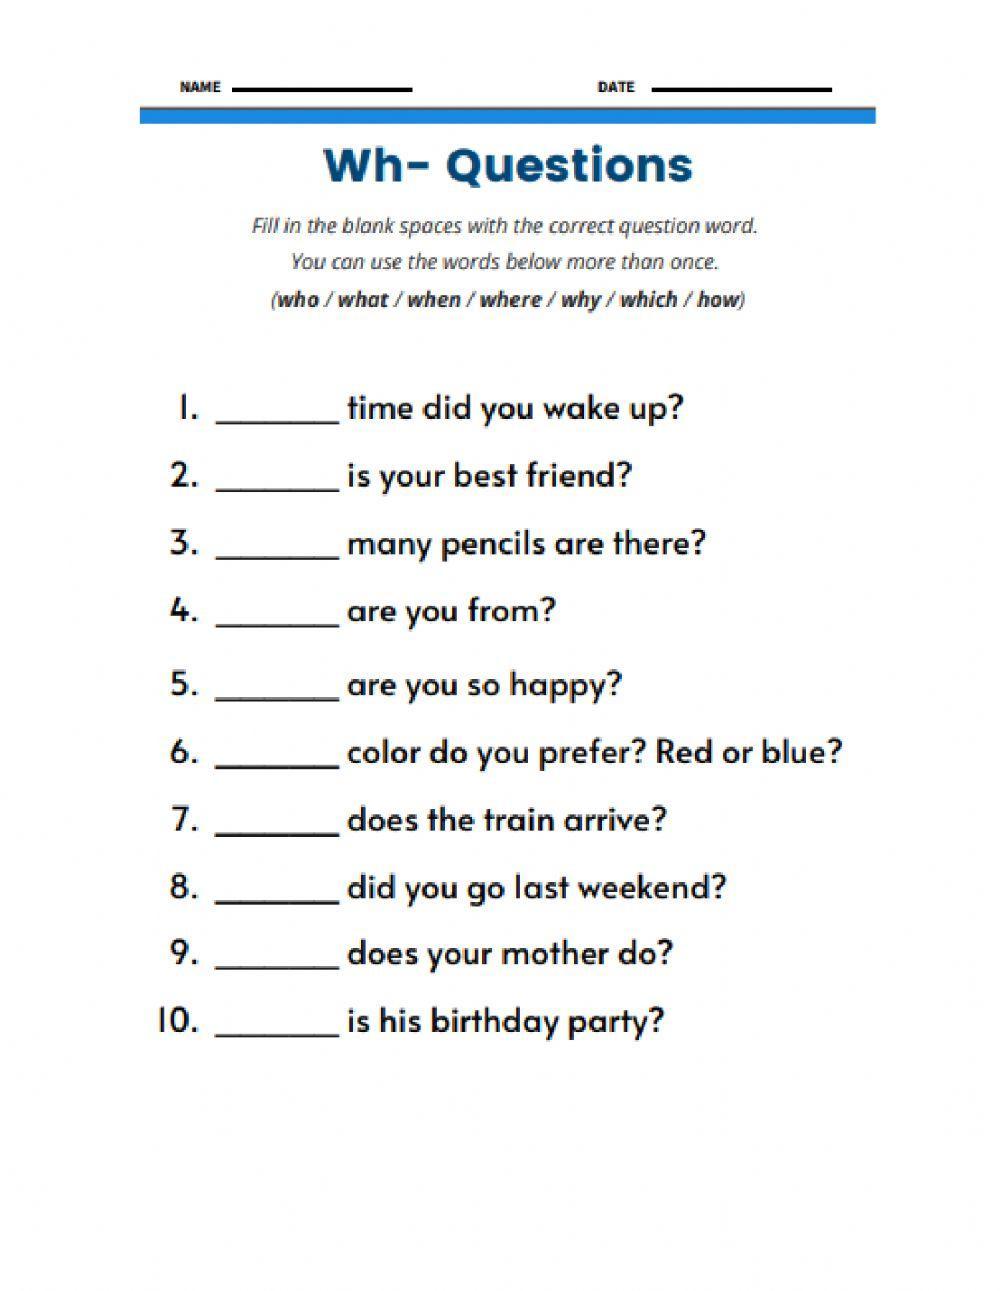 Wh Questions Worksheets | ESL Worksheets | Games4esl